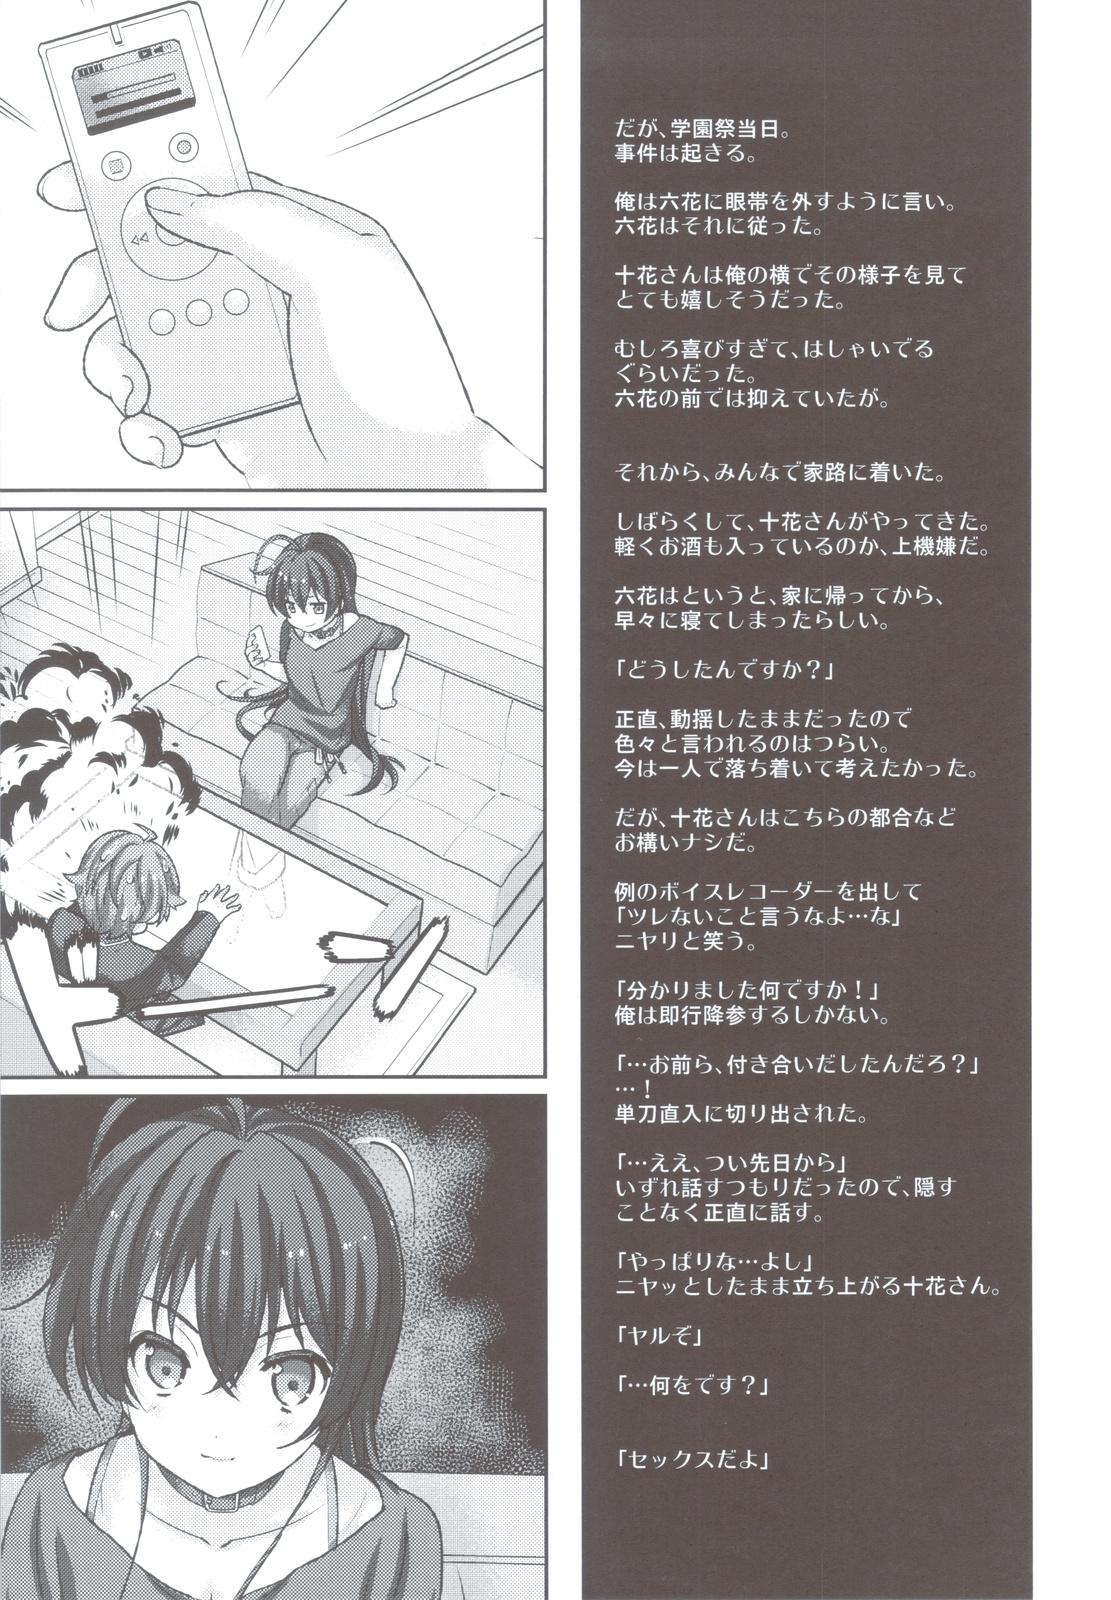 Analfucking Koi Shita Kanojo wa Chuunibyou - Chuunibyou demo koi ga shitai Que - Page 6